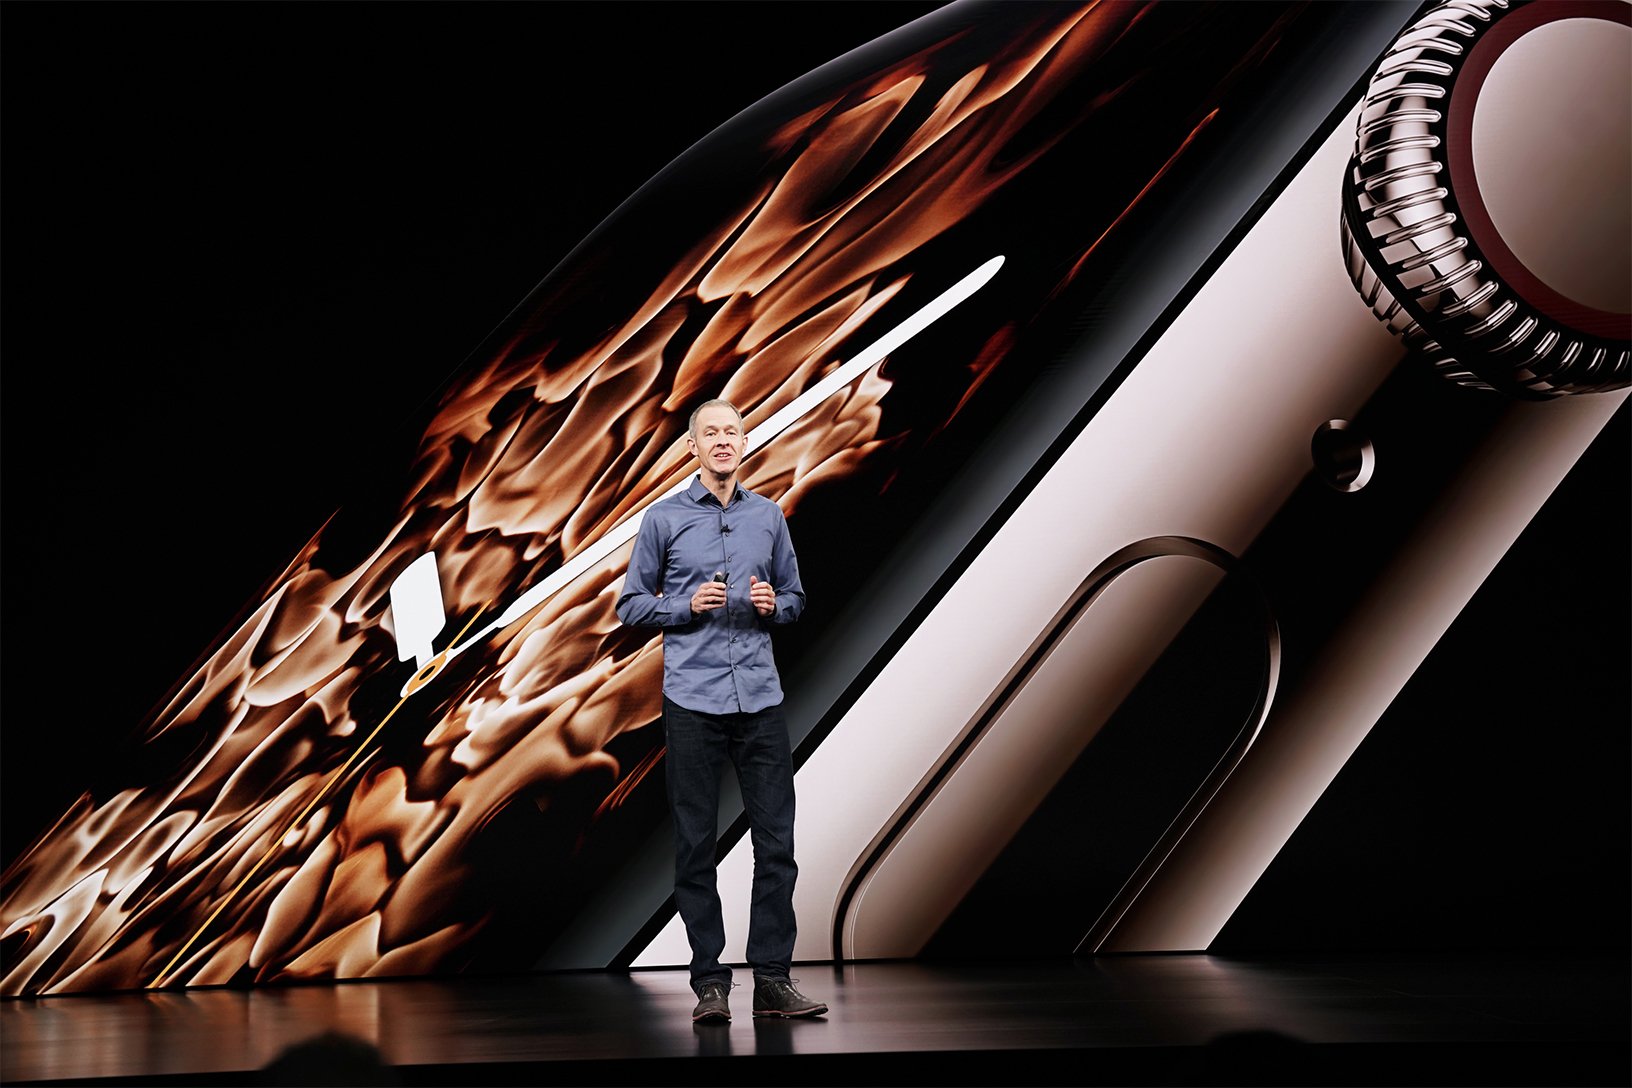 Apple domina el mercado de relojes inteligentes en el cuarto trimestre de 2020